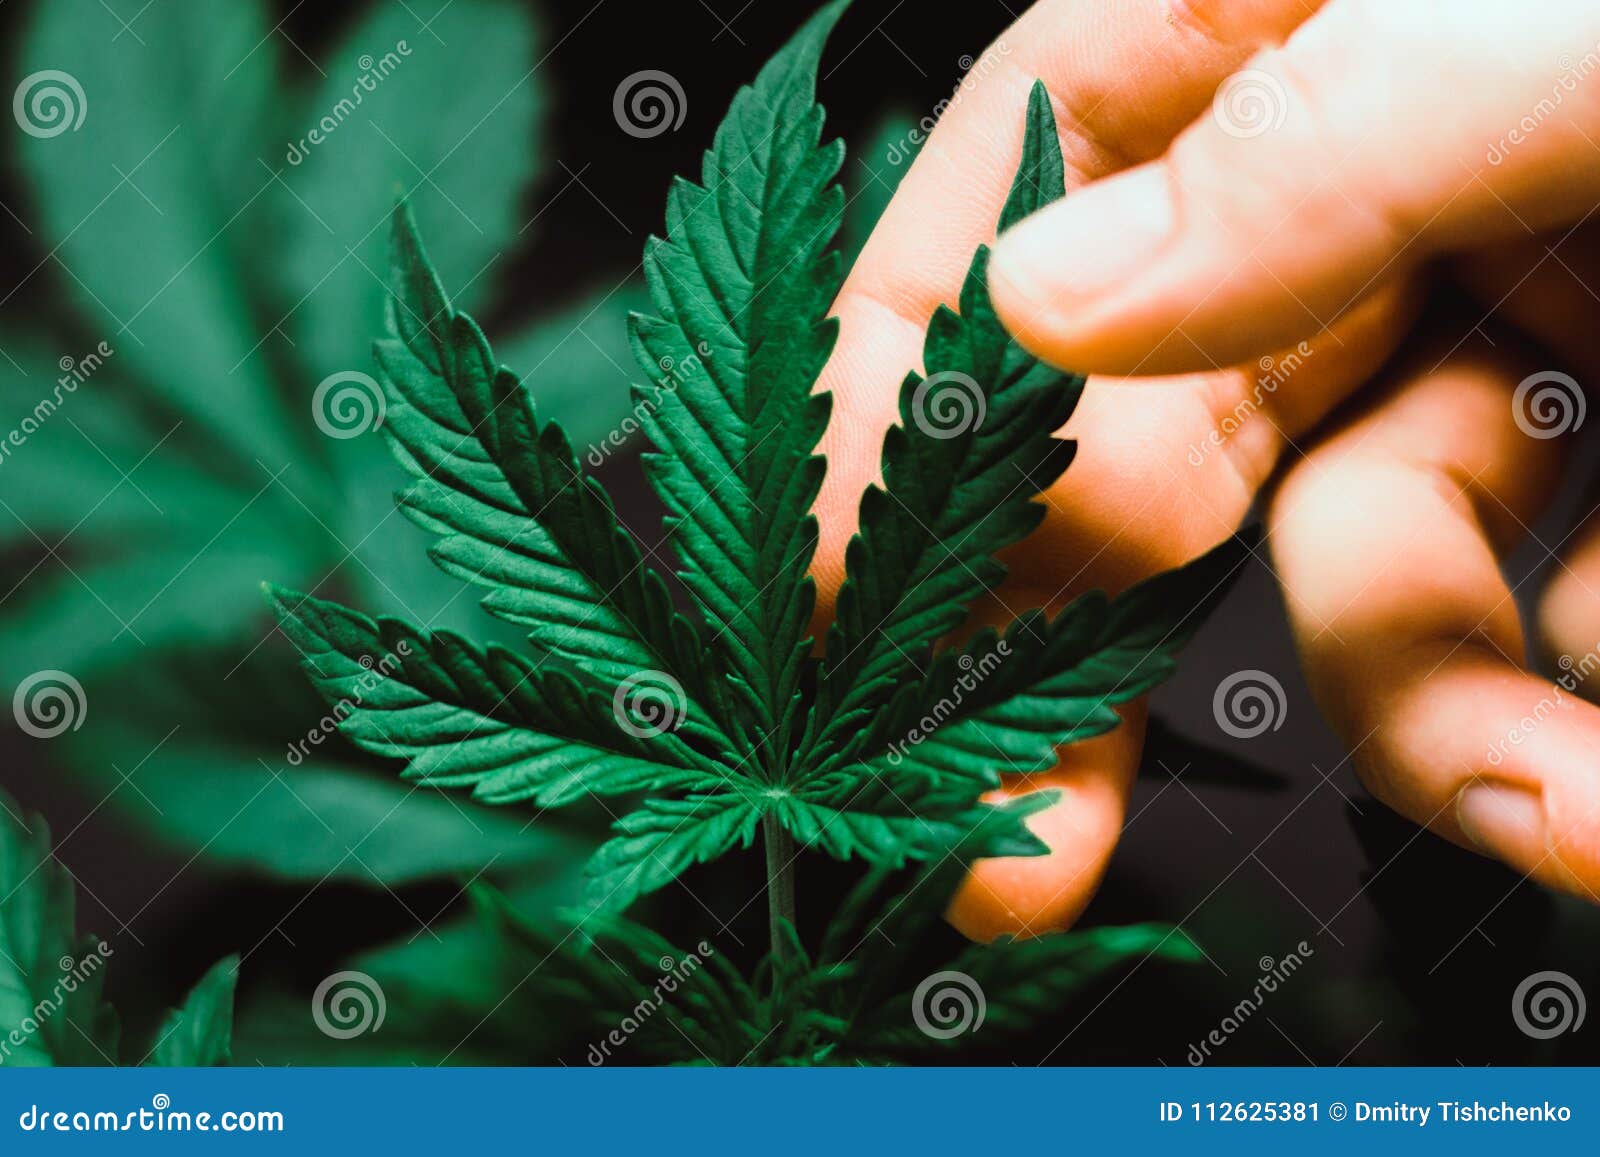 Красивые фотографии марихуаны статусы про коноплю